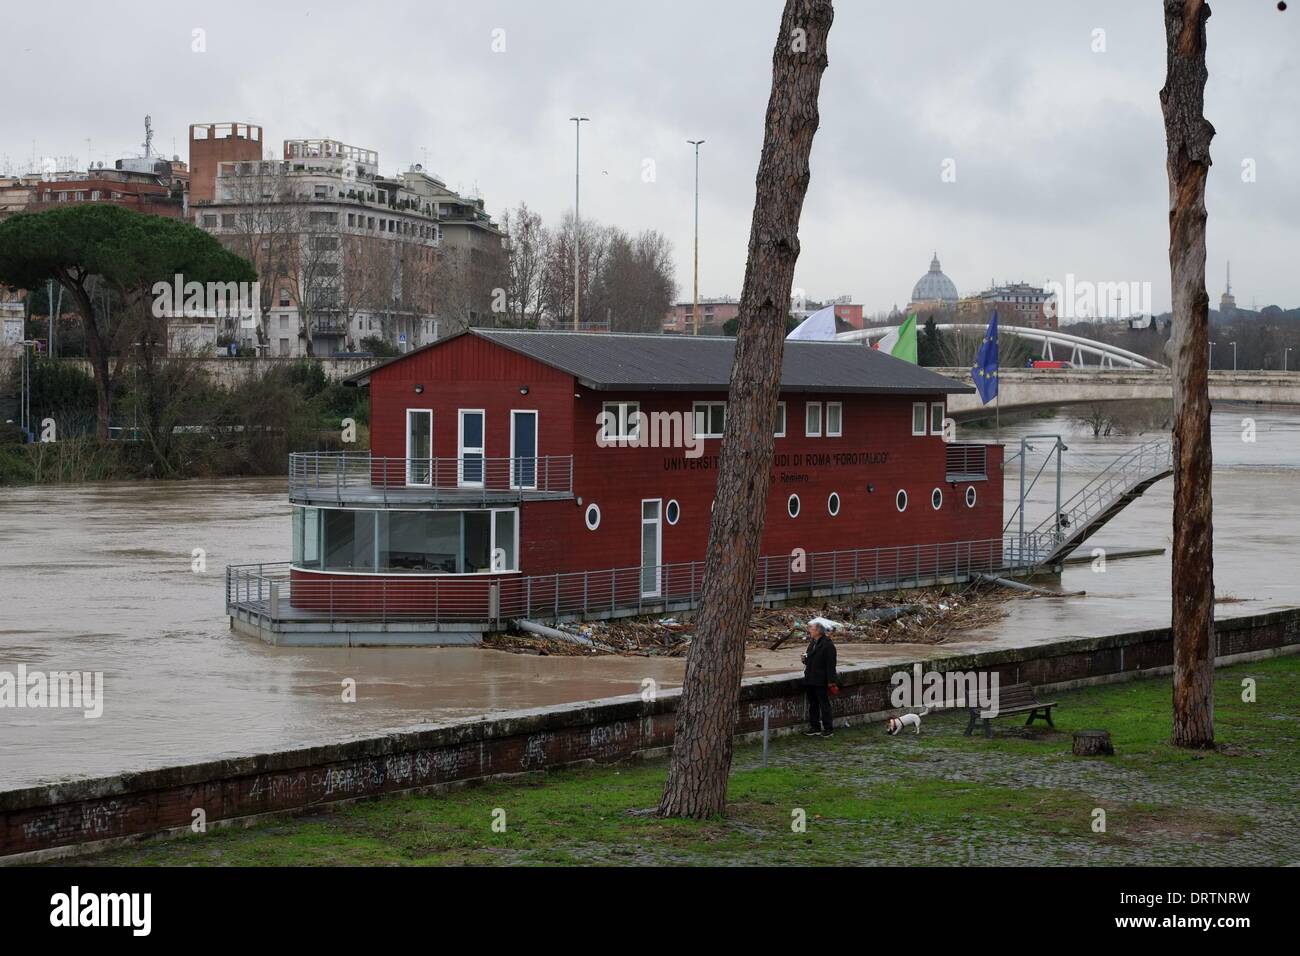 Rom, Italien. 1. Februar 2014. Unwetter-Warnung in Italien. Hochwasser des Flusses Tiber an der Milvischen Brücke, Credit: wirklich Easy Star/Alamy Live News Stockfoto